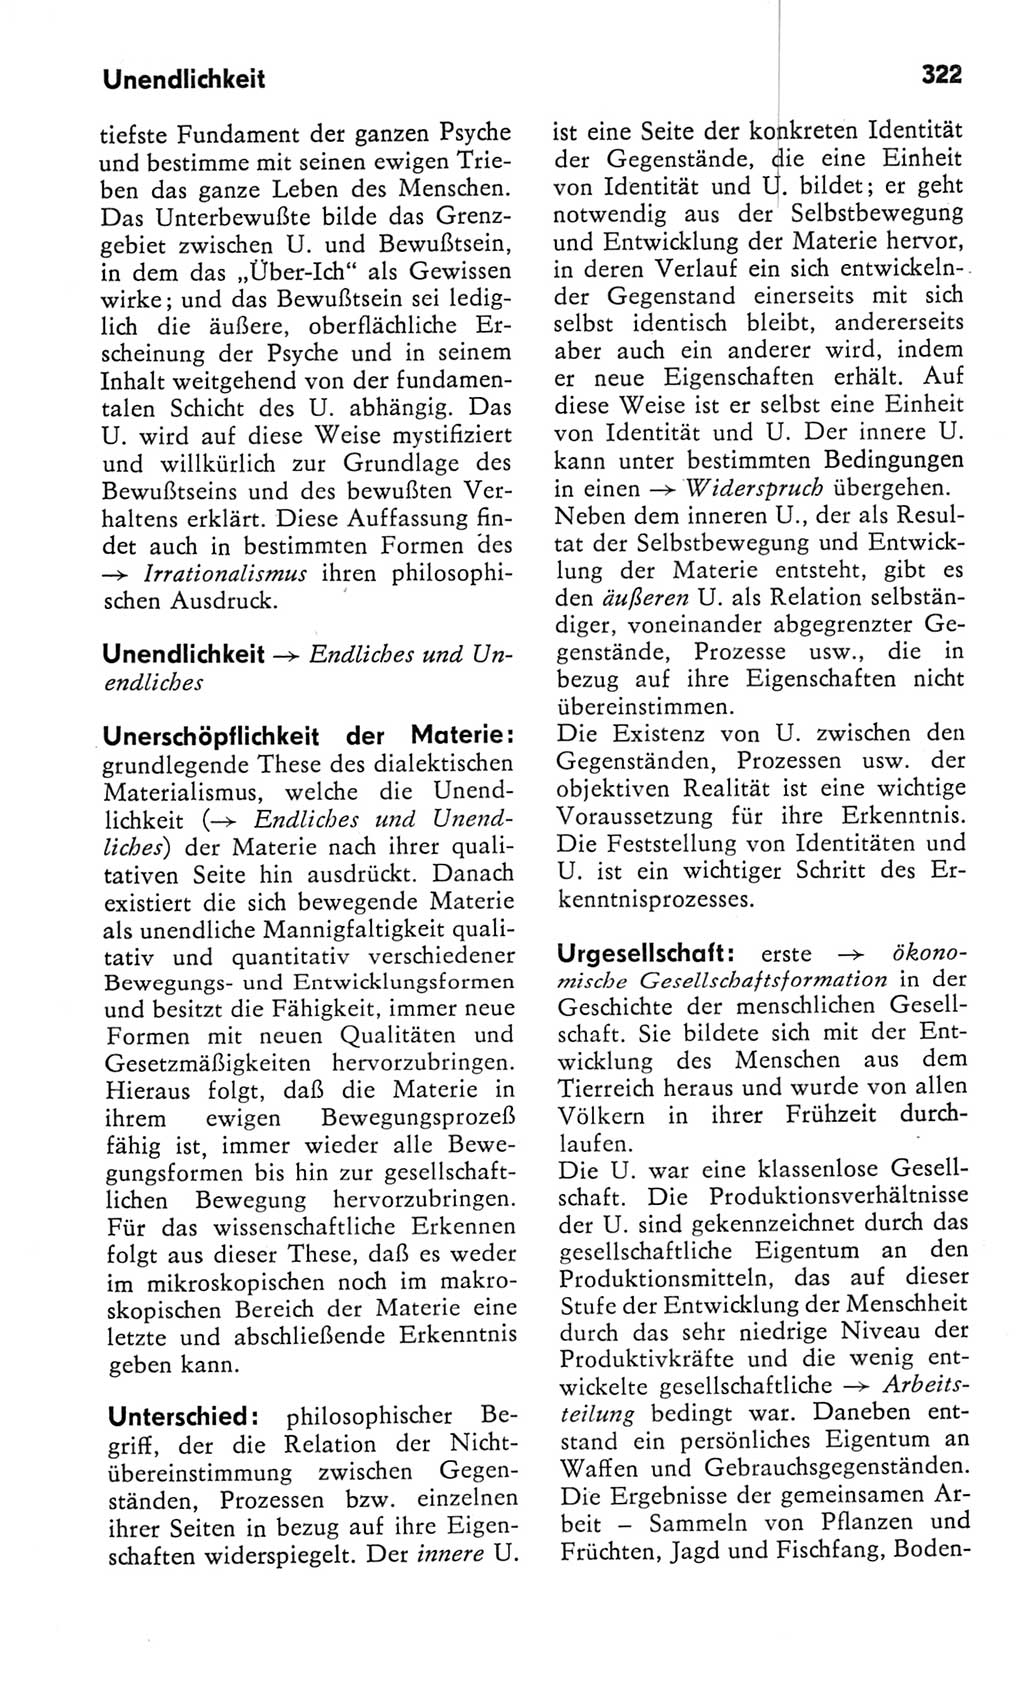 Kleines Wörterbuch der marxistisch-leninistischen Philosophie [Deutsche Demokratische Republik (DDR)] 1982, Seite 322 (Kl. Wb. ML Phil. DDR 1982, S. 322)